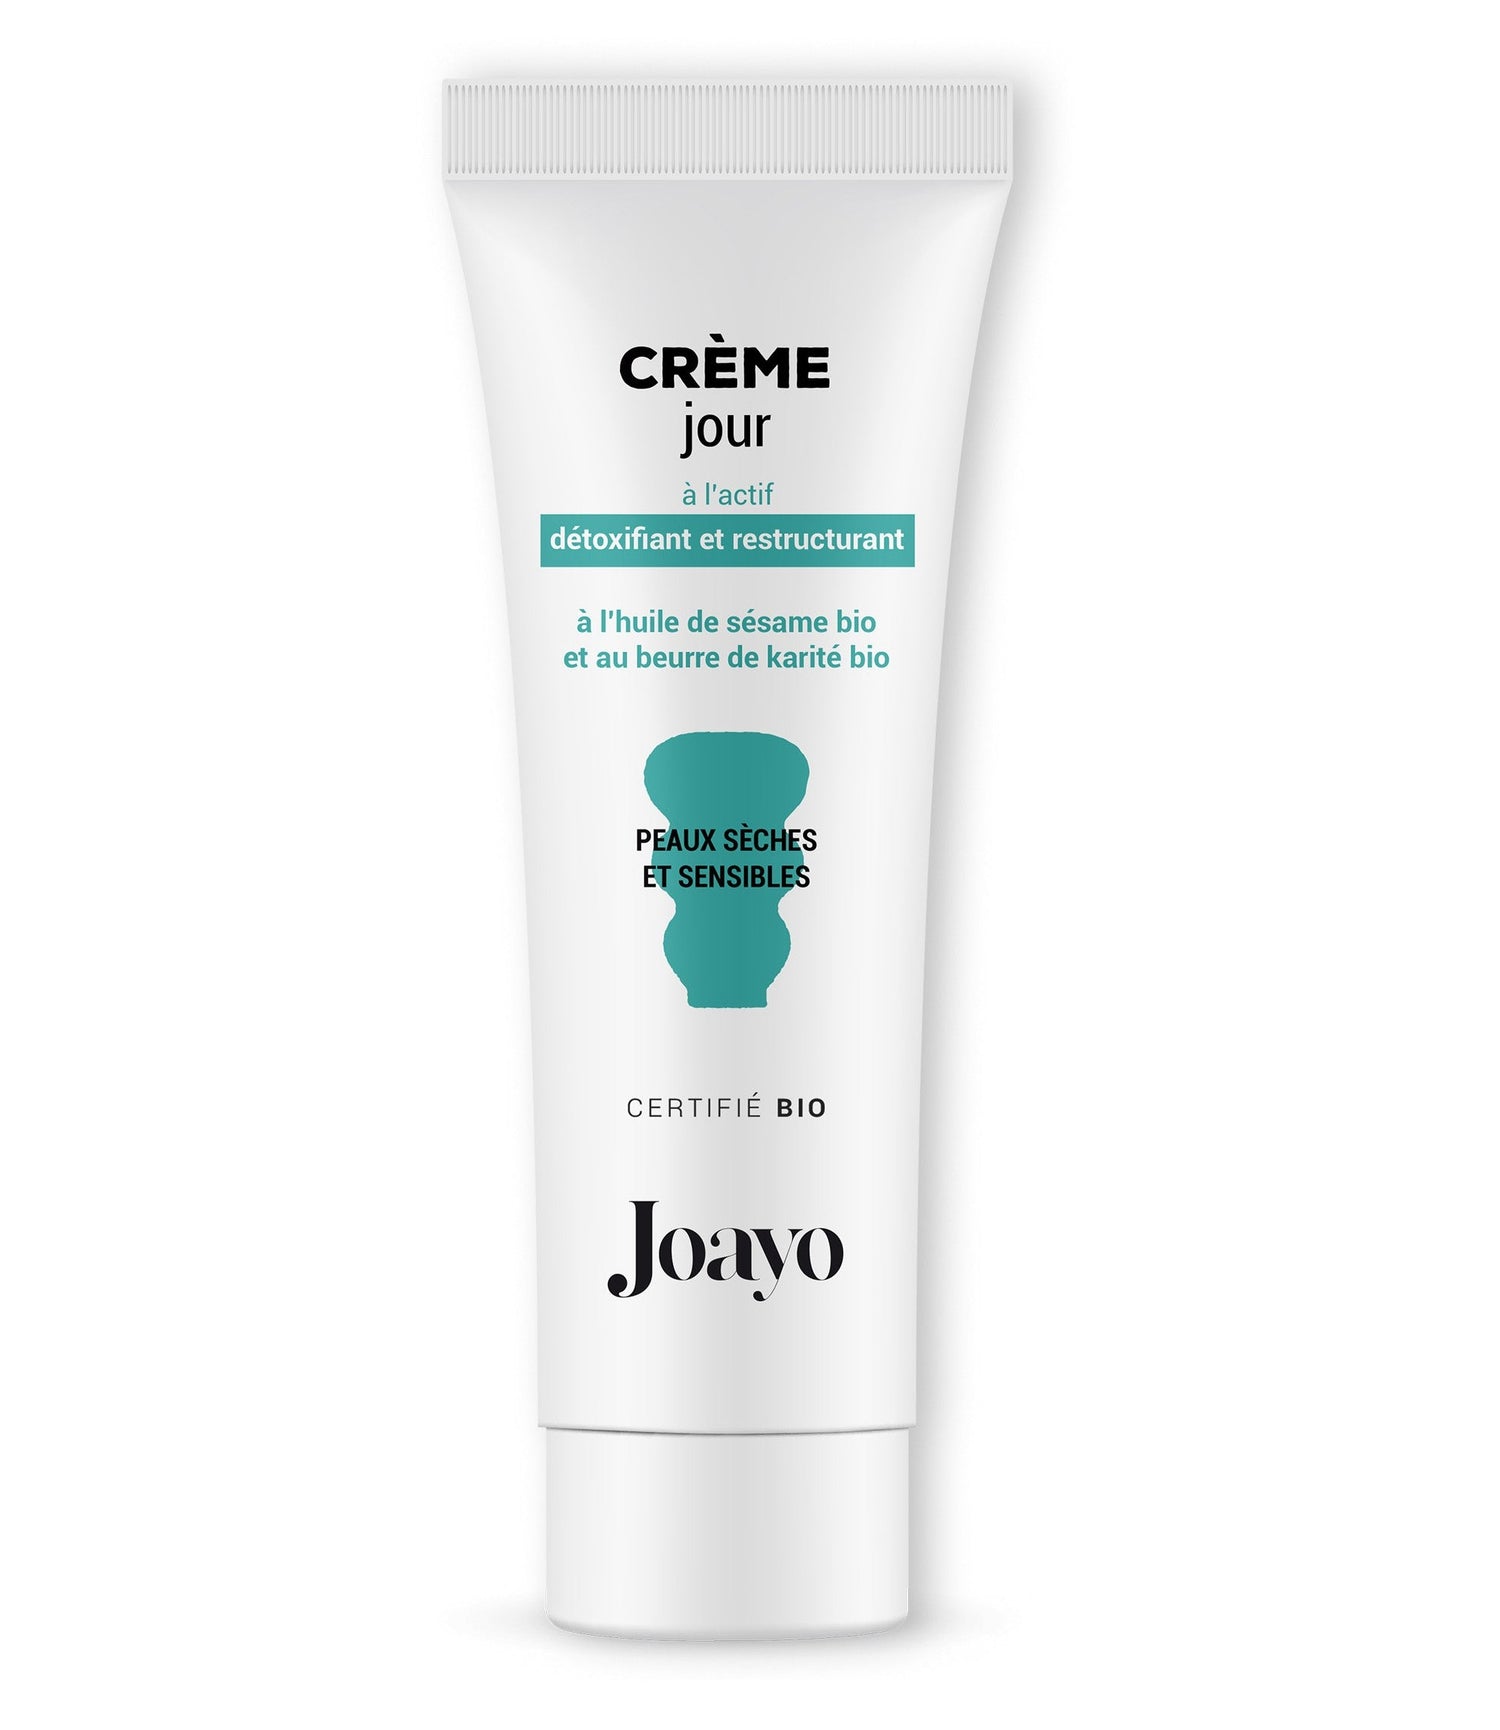 Crème jour bio Joayo fabriqué France cosmétique soin